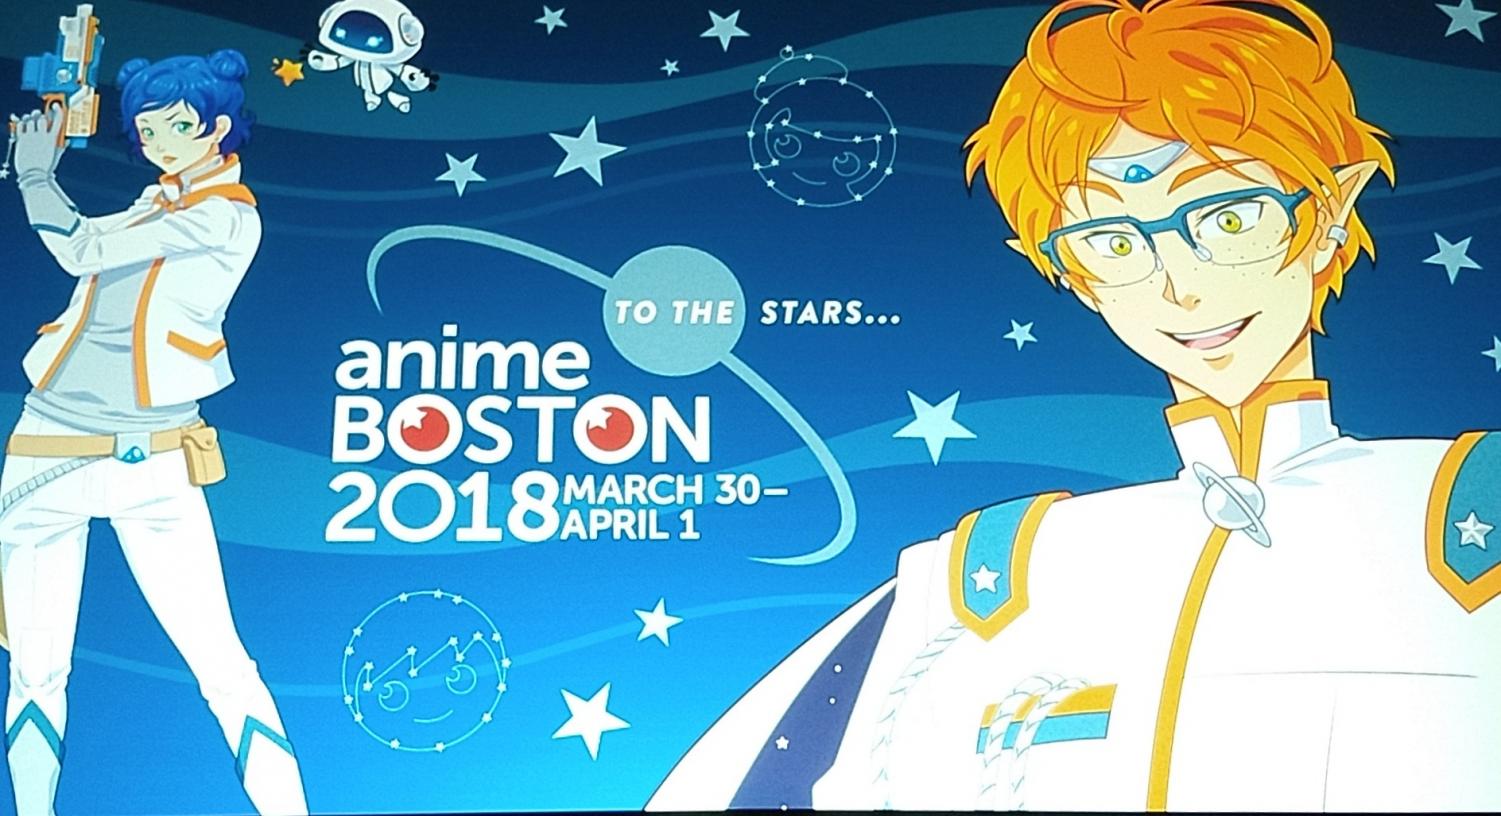 Anime Boston - Review of Sheraton Boston Hotel, Boston, MA - Tripadvisor